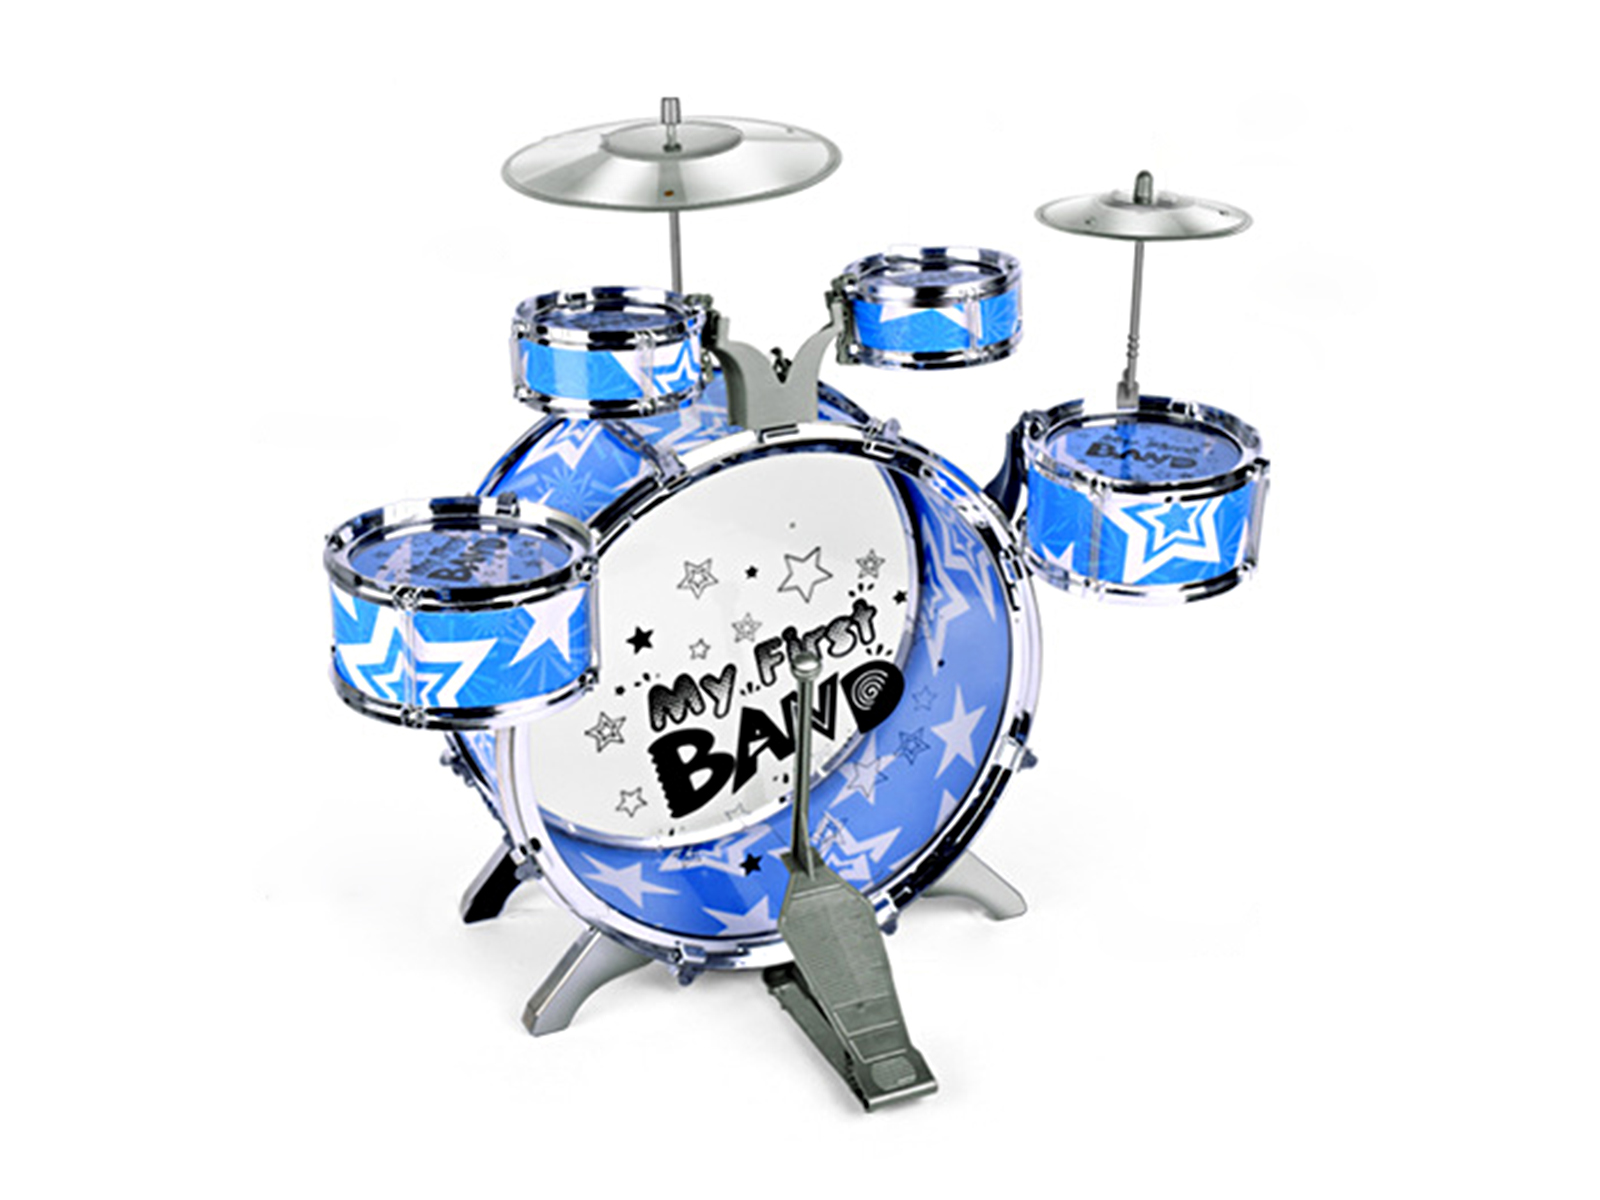 Kids Blue Six-Piece Drum Set